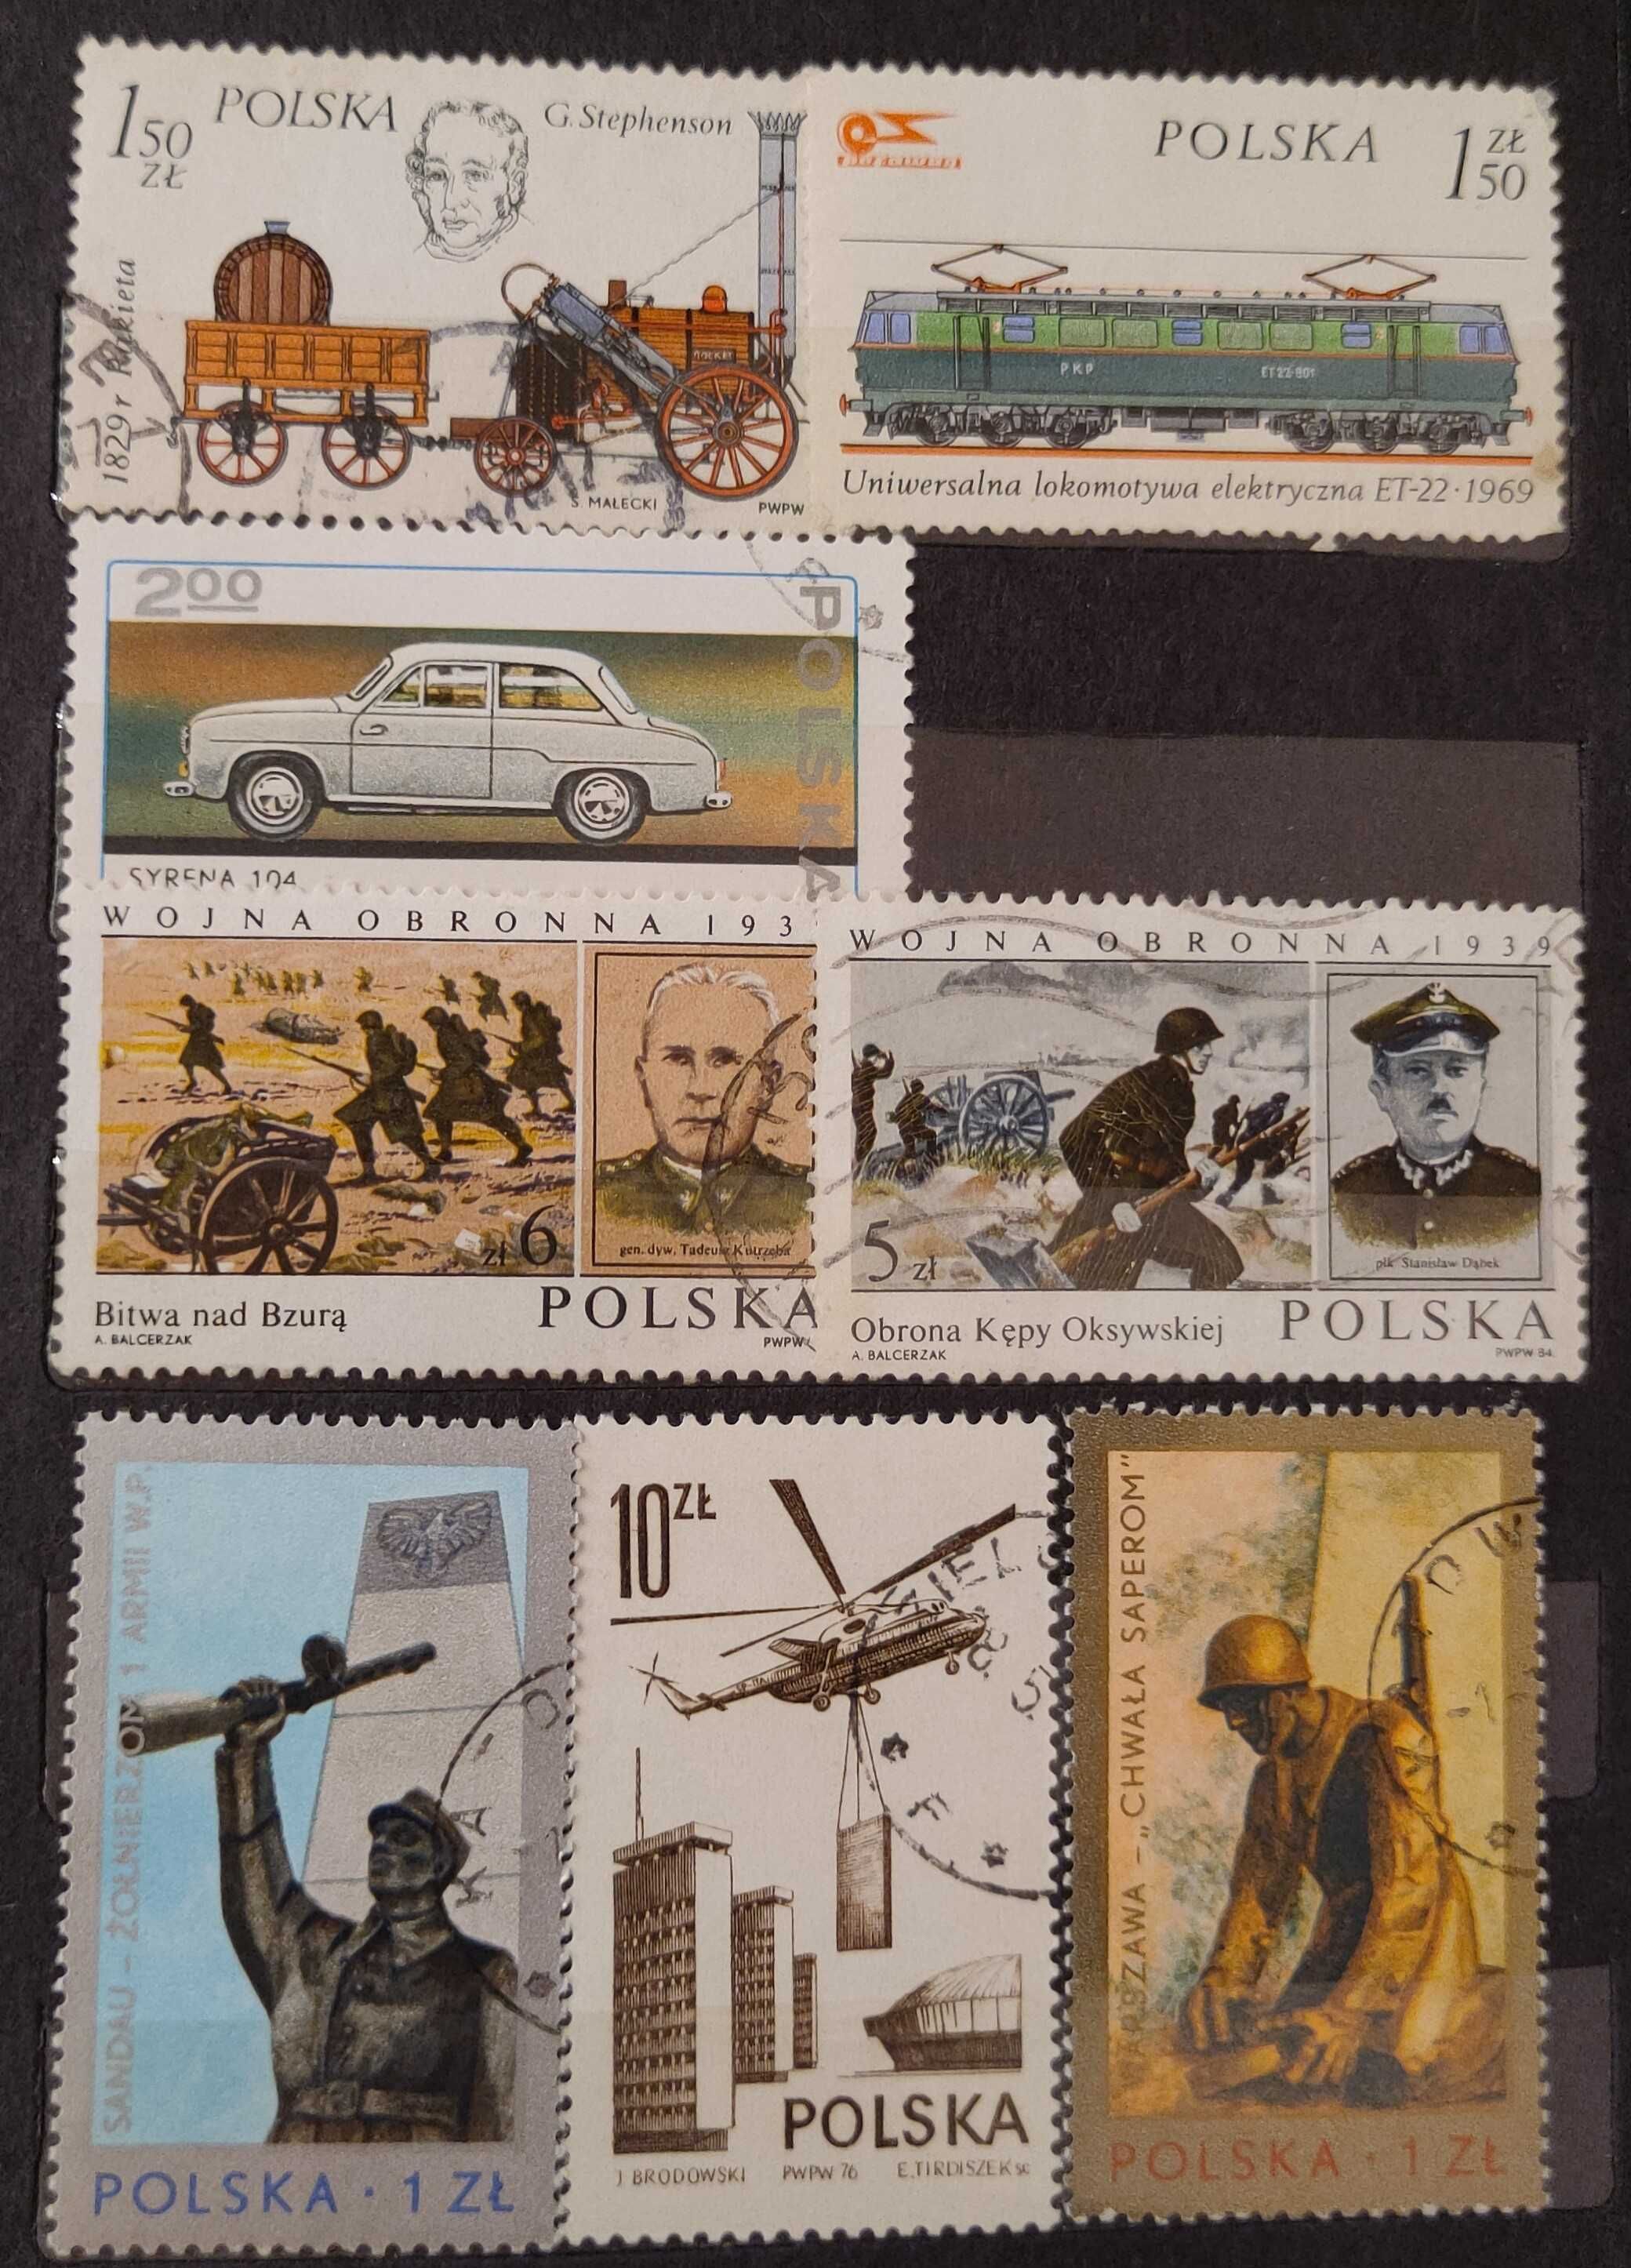 Znaczki pocztowe, znaczek pocztowy z Polski (54 sztuki), lata 70-80